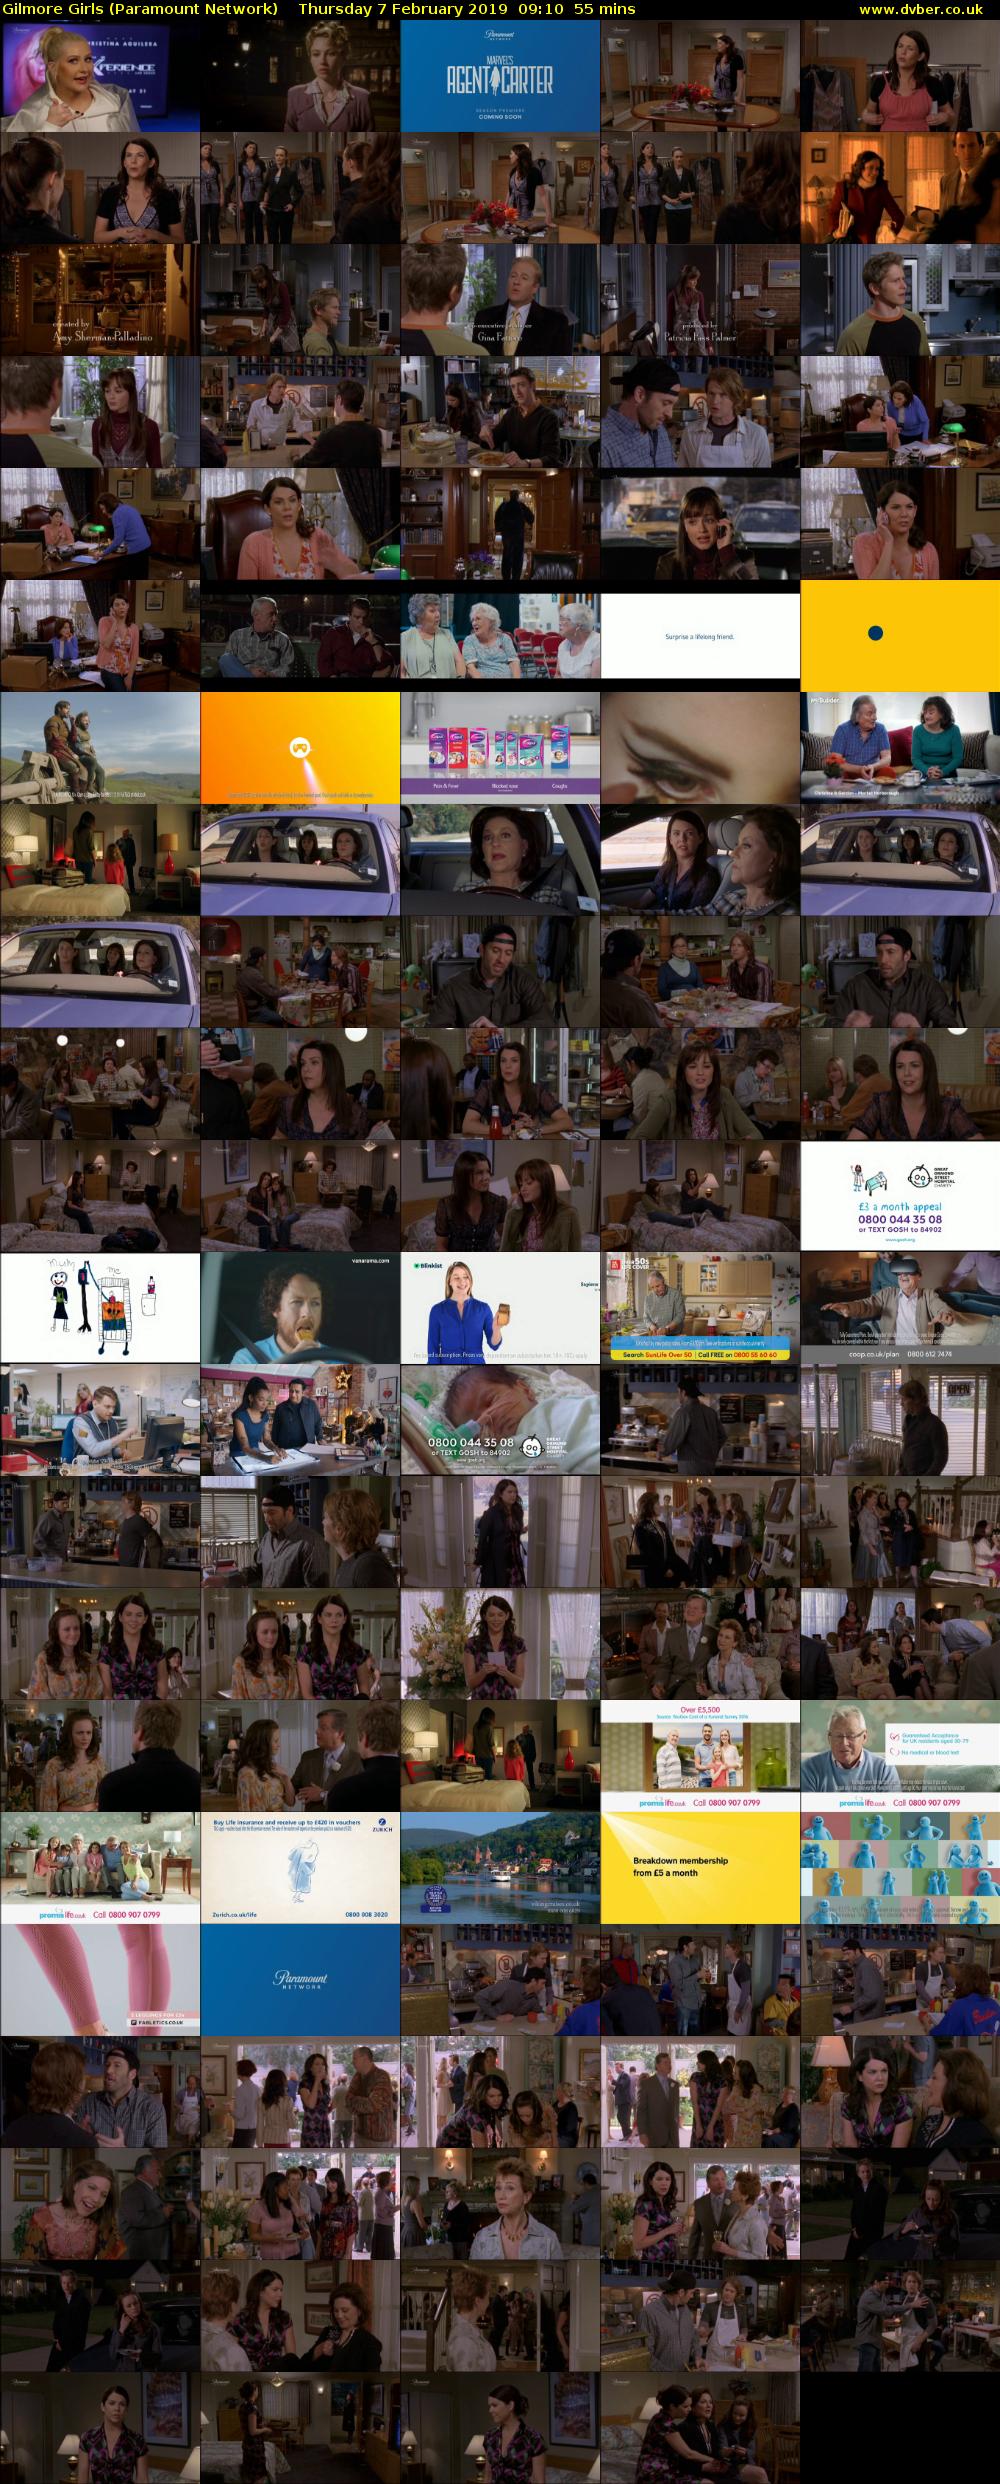 Gilmore Girls (Paramount Network) Thursday 7 February 2019 09:10 - 10:05